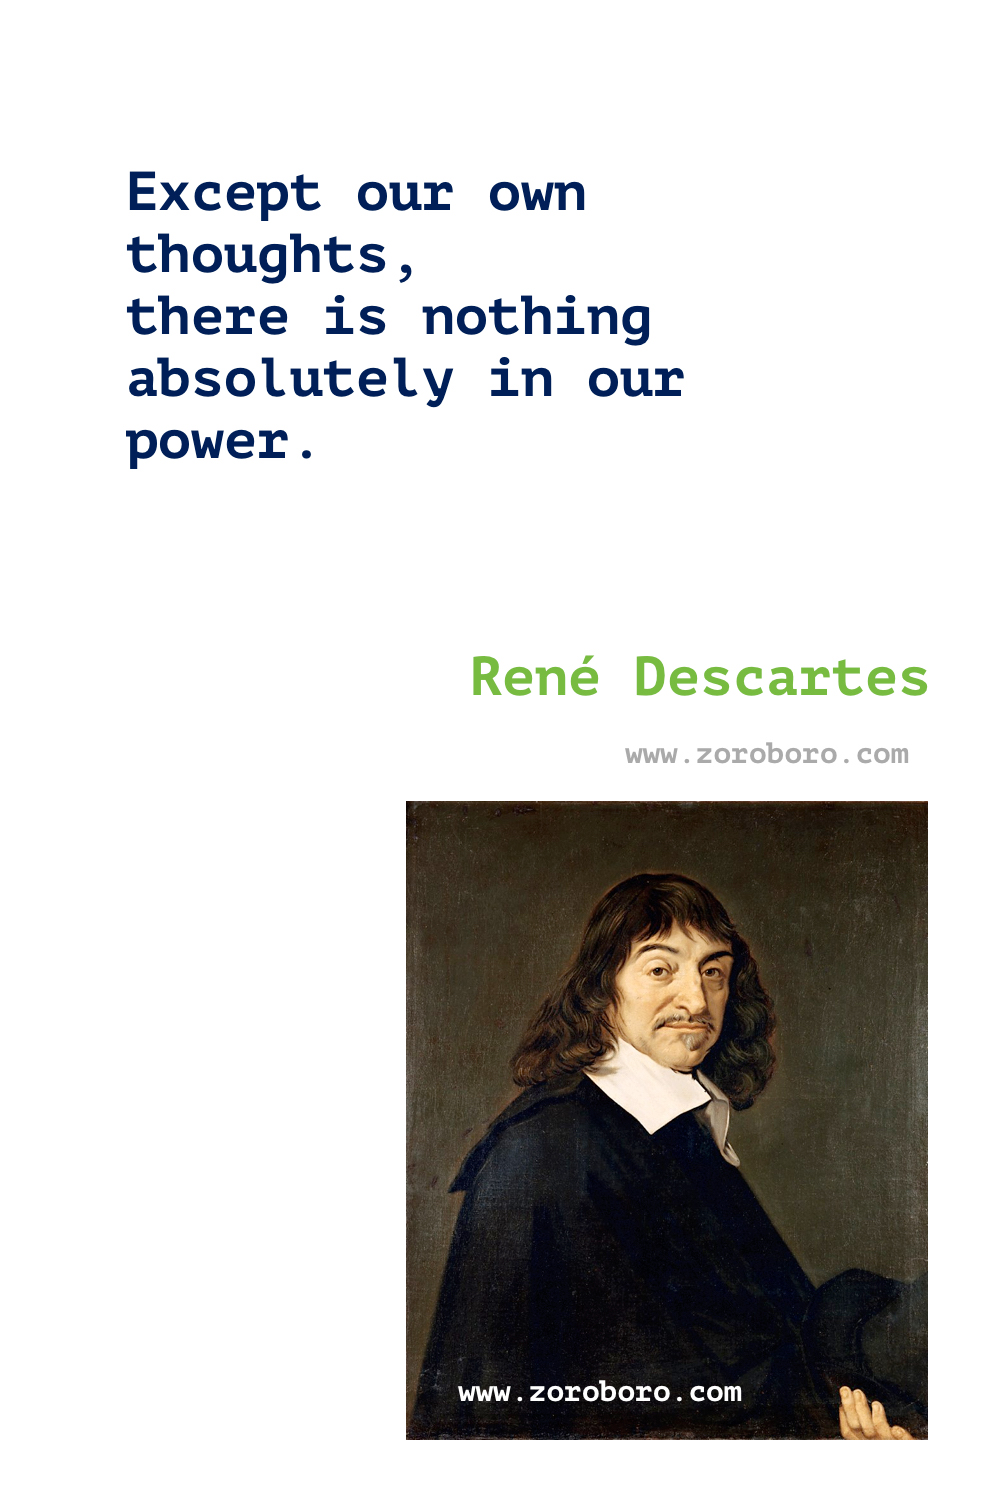 René Descartes Quotes. René Descartes Philosophy. Rene descartes i think therefore i am. René Descartes Books Quotes. Writings